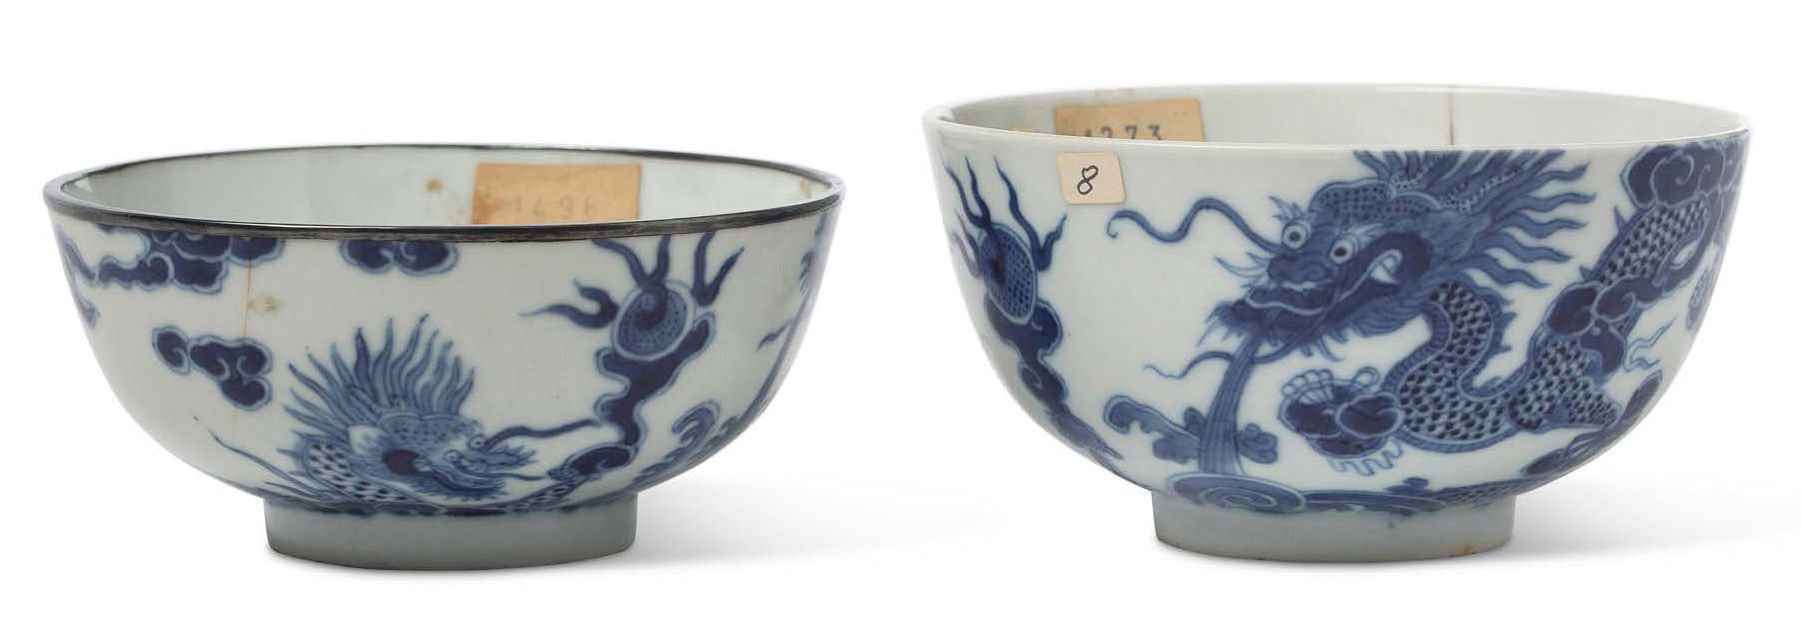 VIETNAM MILIEU XIXE SIÈCLE 
带有君主Thiêu Tri（1841-1847）年号的 "宫廷瓷器"；两个青白瓷碗，上面装饰着追逐圣珠的&hellip;